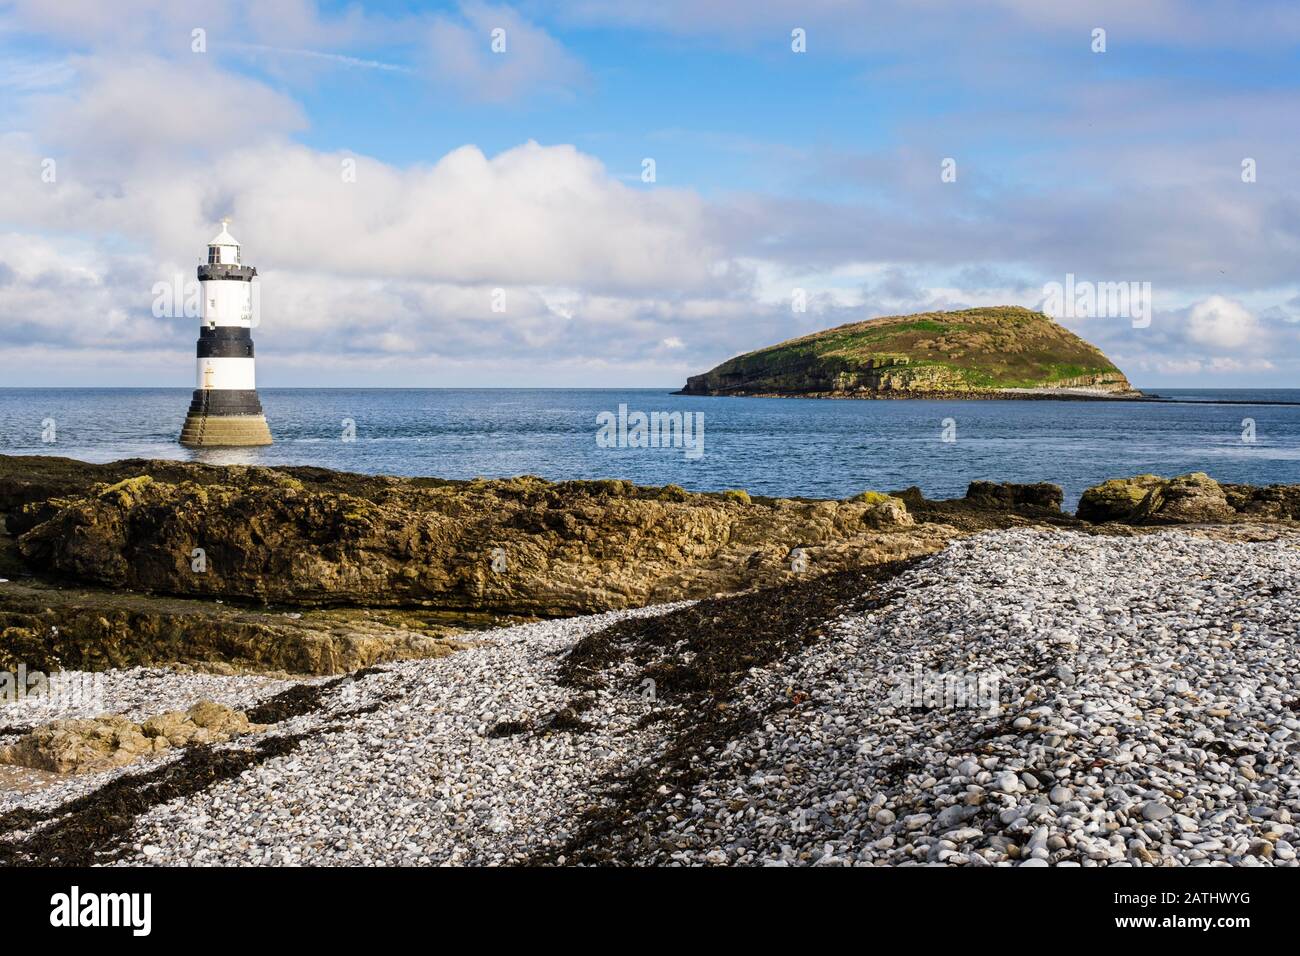 Phare de Penmon et île de Puffin (Ynys Seiriol) depuis la plage de galets à Penmon point (Trwyn du), île d'Anglesey, Pays de Galles, Royaume-Uni, Grande-Bretagne Banque D'Images